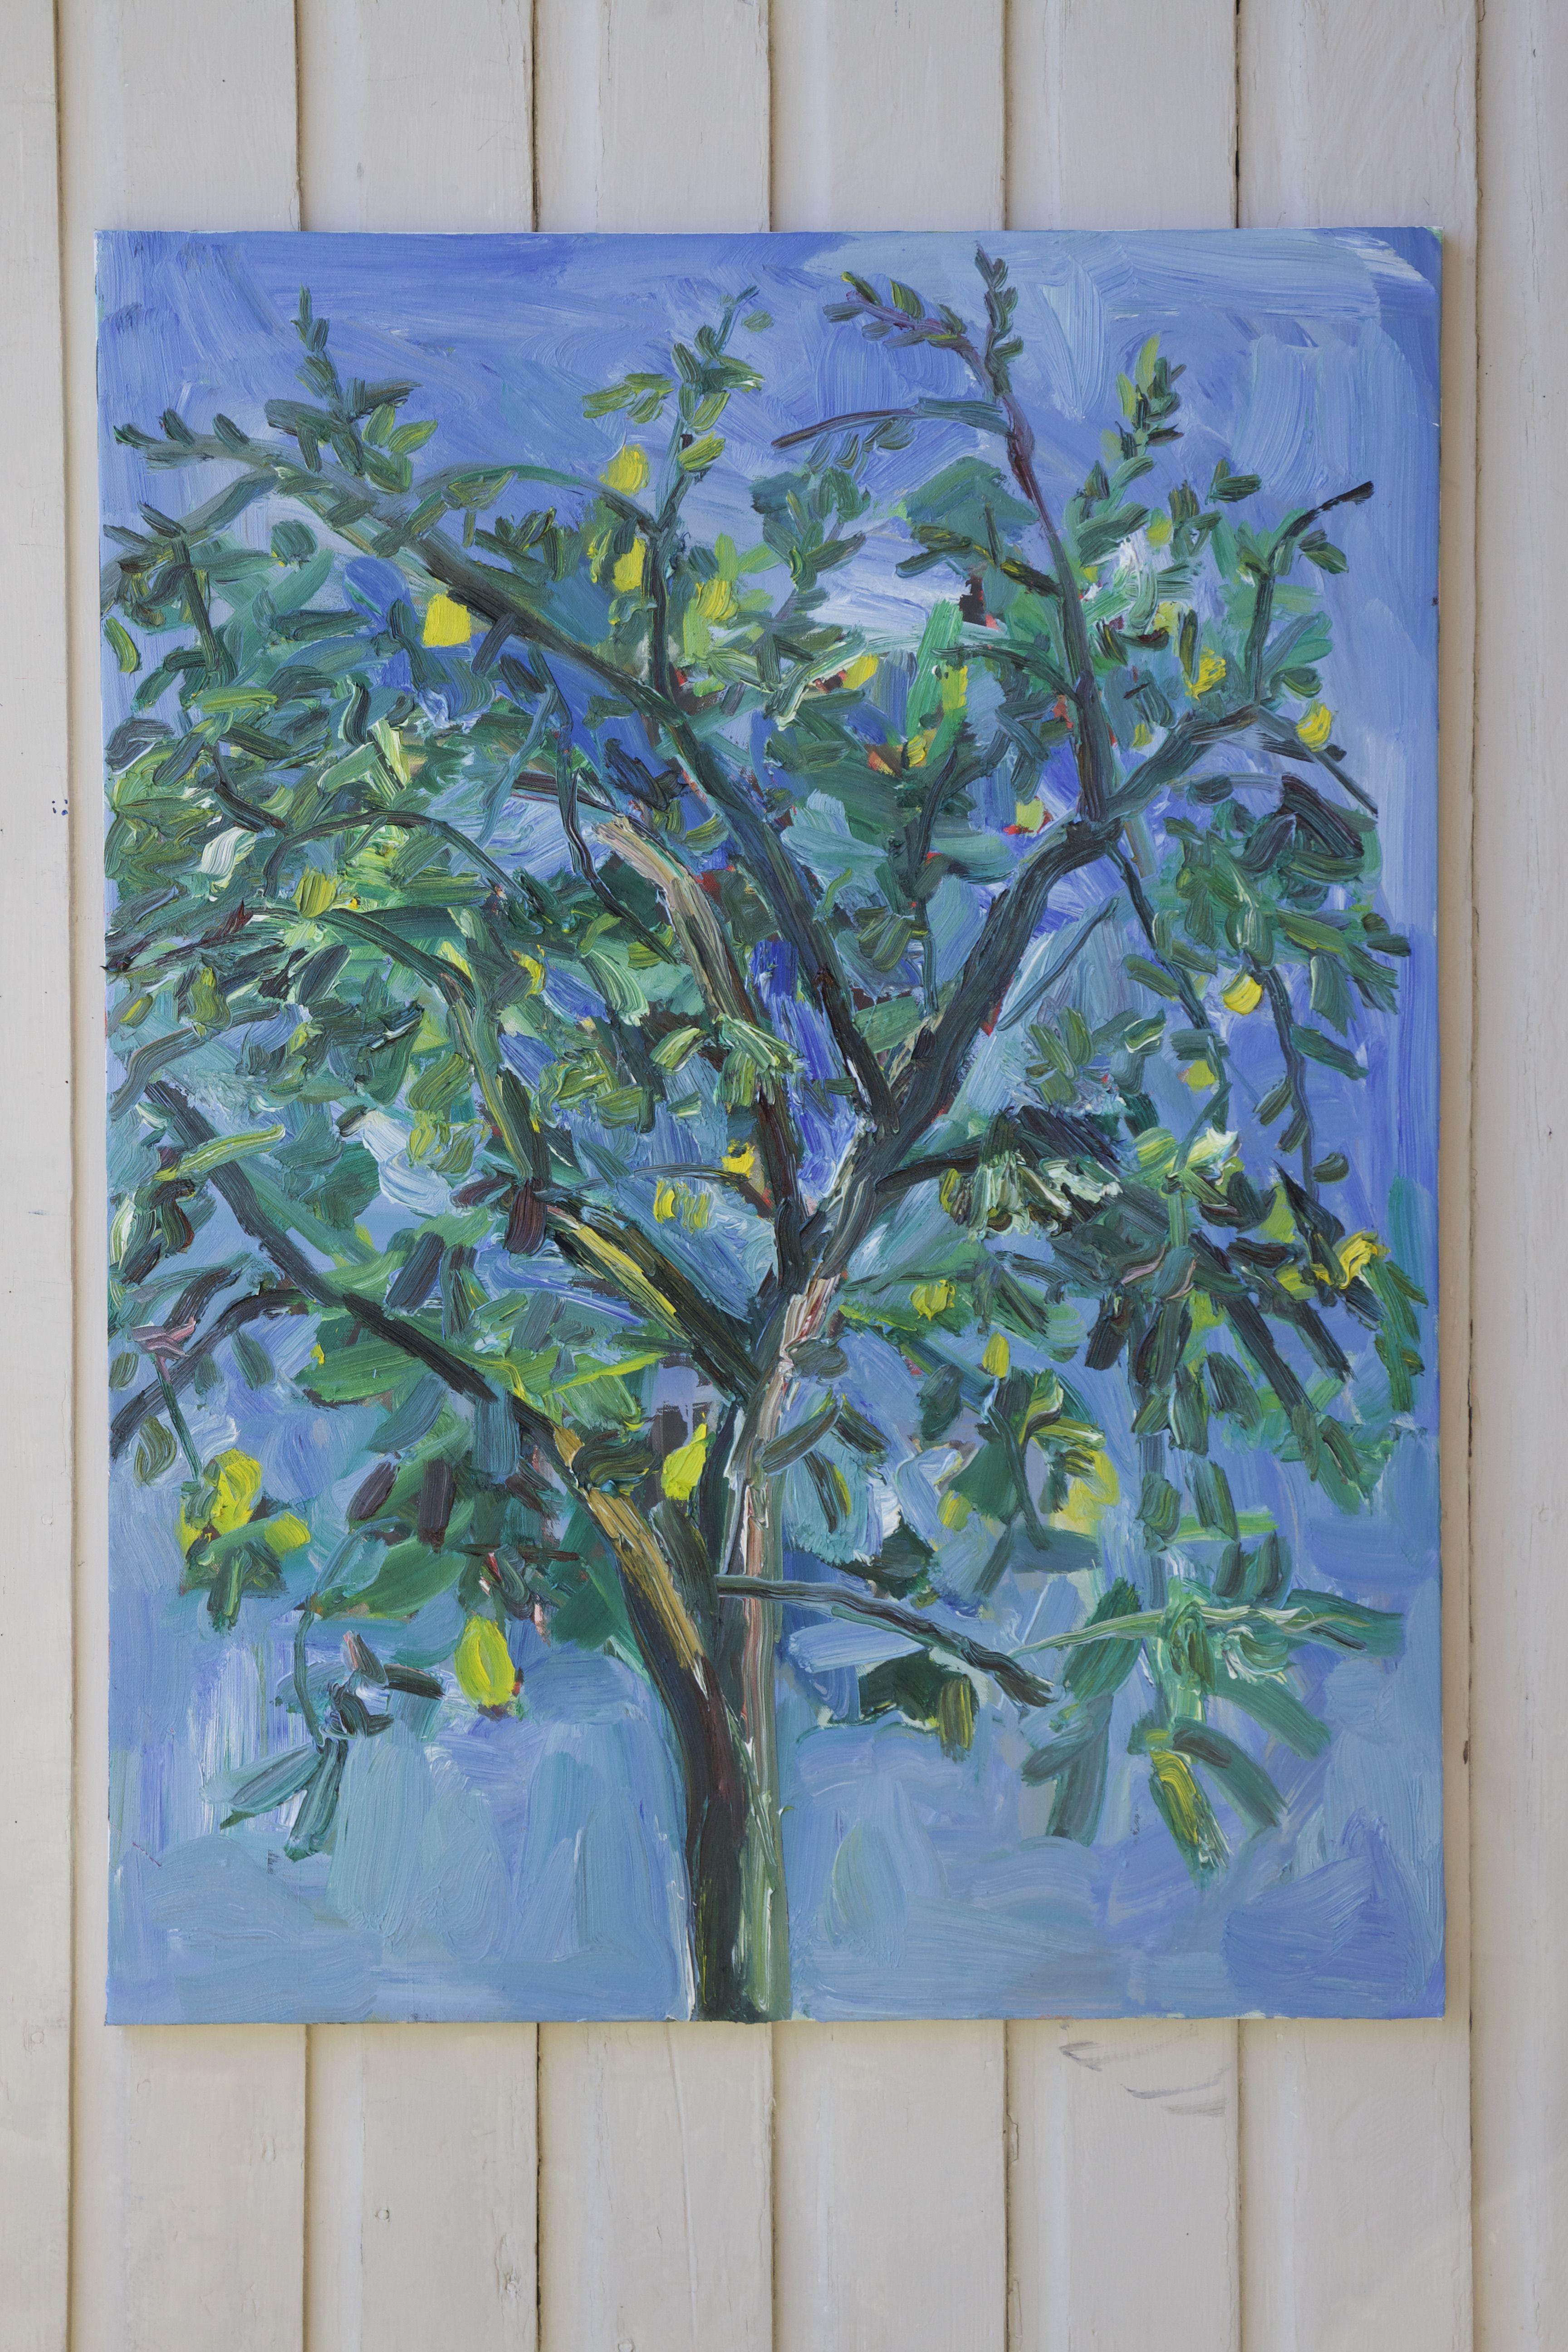 Zitronenbaum in Quarentin, Gemälde, Öl auf Leinwand (Sonstige Kunststile), Painting, von John Kilduff